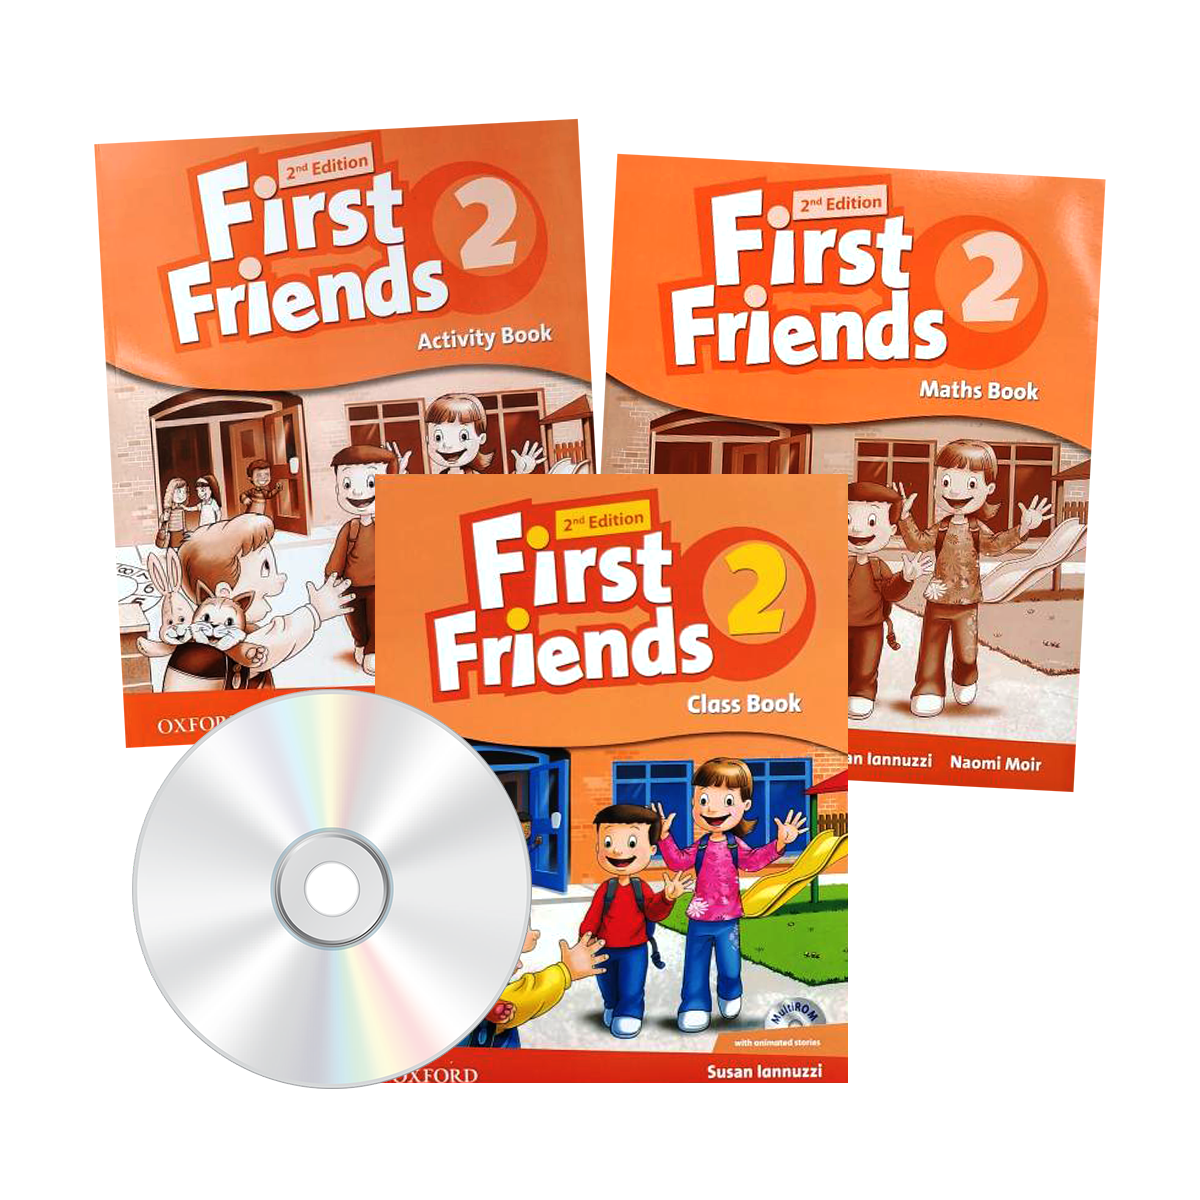 First friends 4. First friends 2 activity book. First friends. First friends 1. First friends 1 1 Edition.